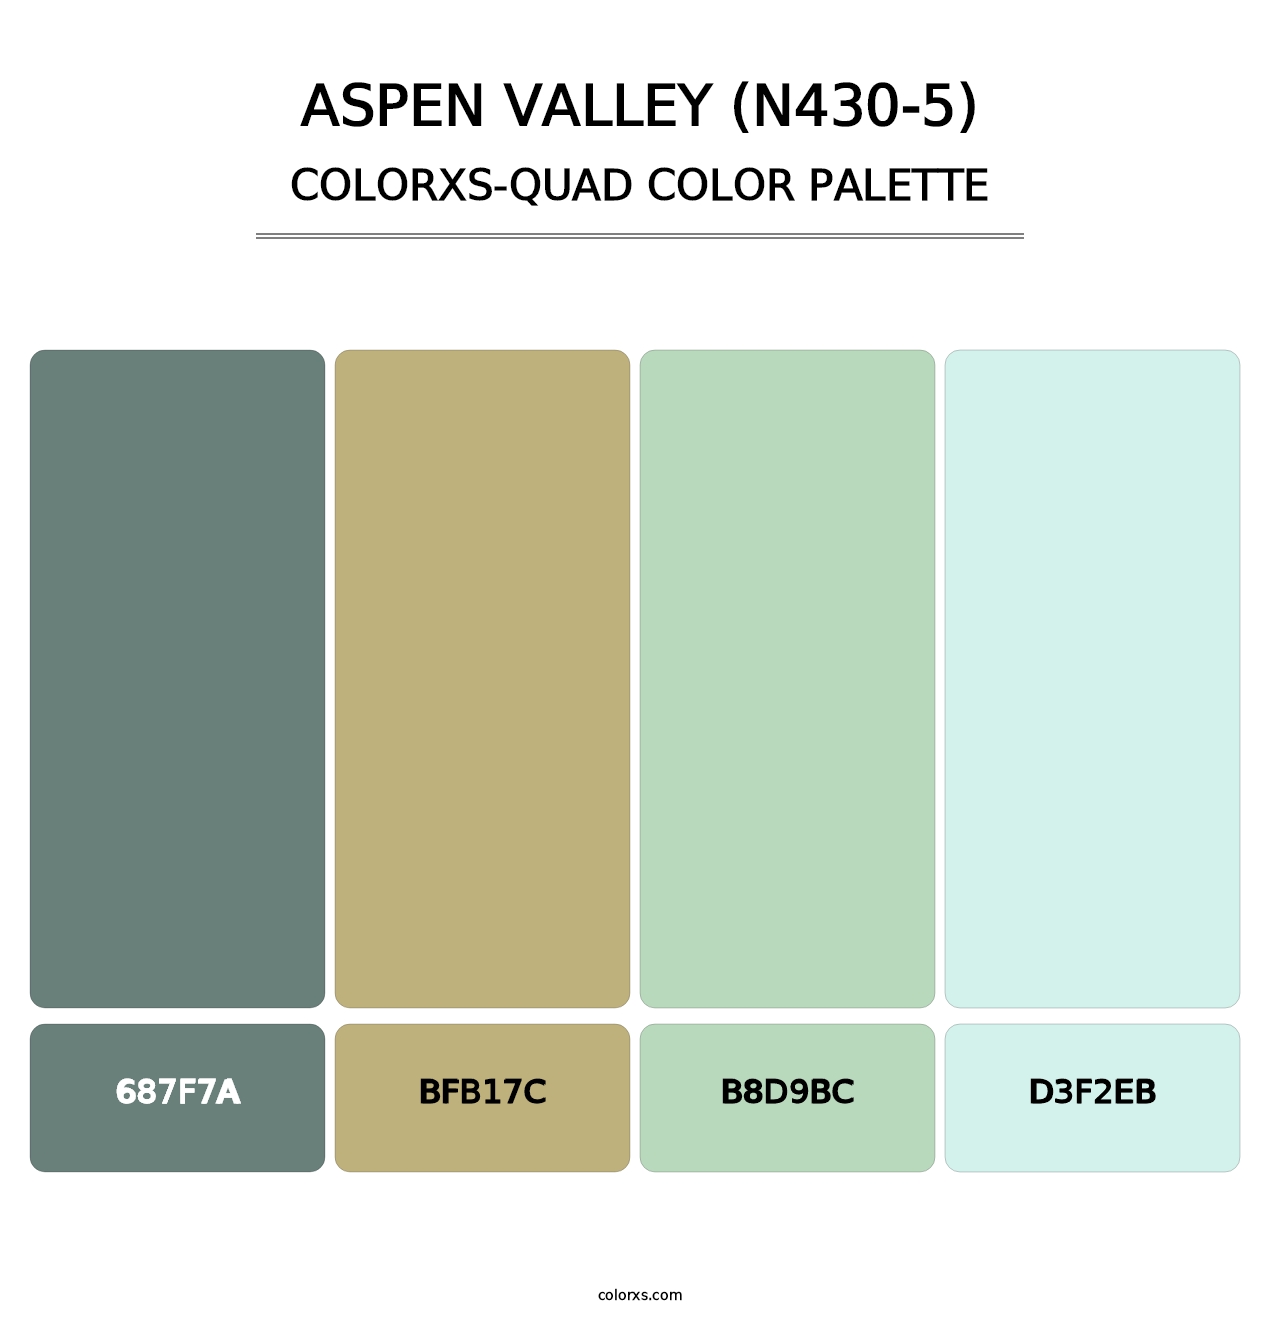 Aspen Valley (N430-5) - Colorxs Quad Palette